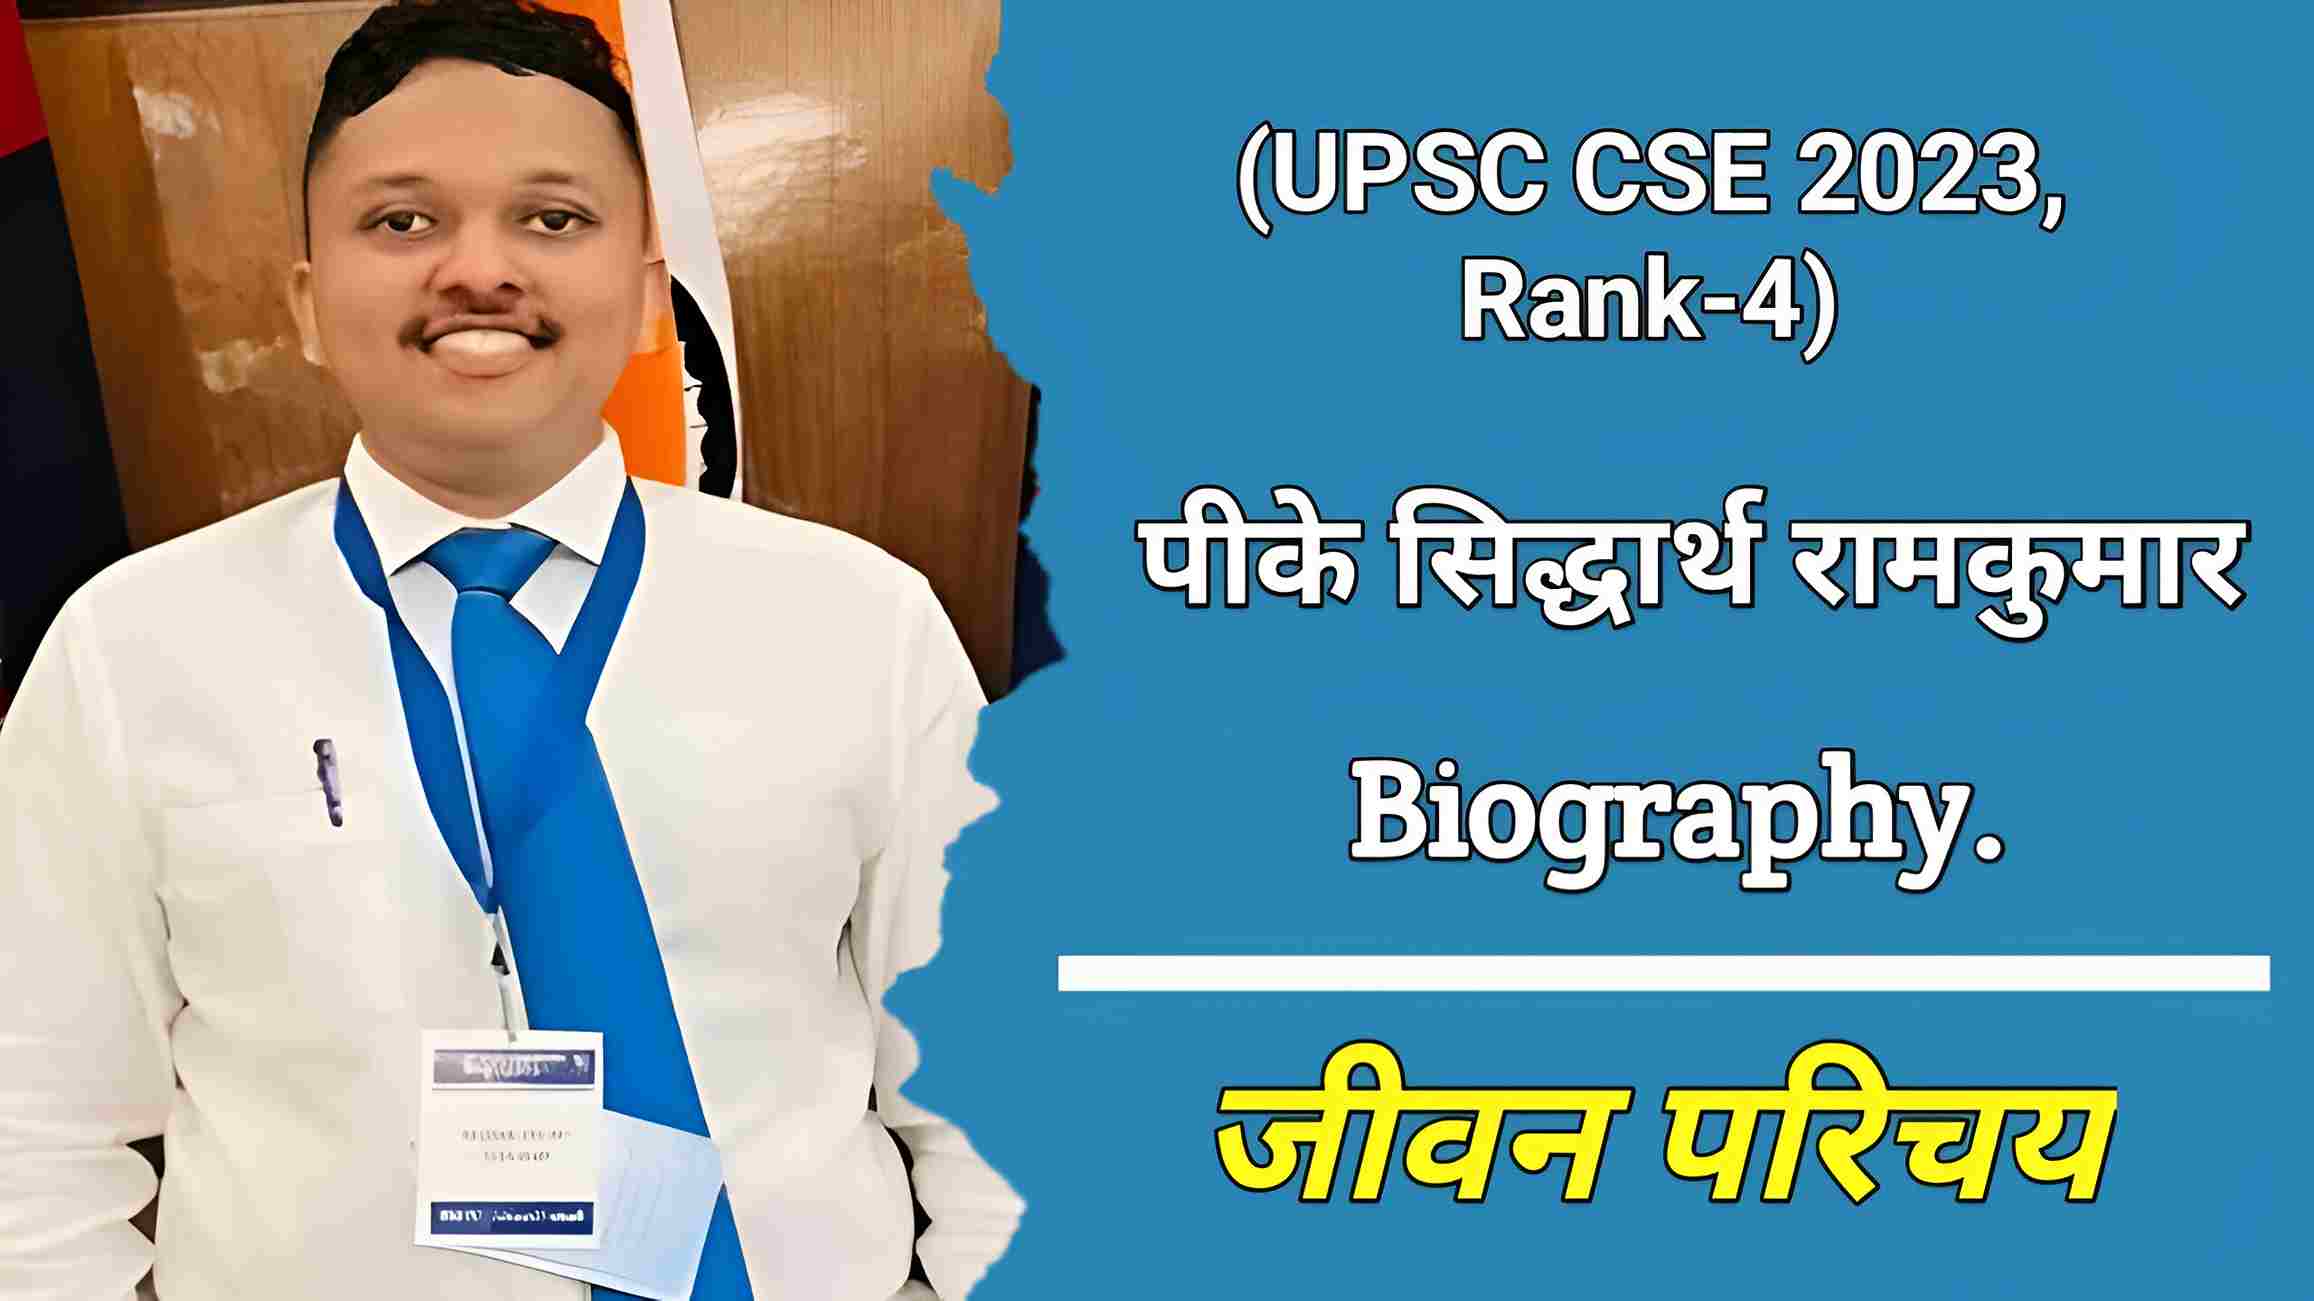 पी‌.के. सिद्धार्थ रामकुमार (UPSC CSE Rank-4) का जीवन परिचय | PK Sidharth Ramkumar Biography in Hindi